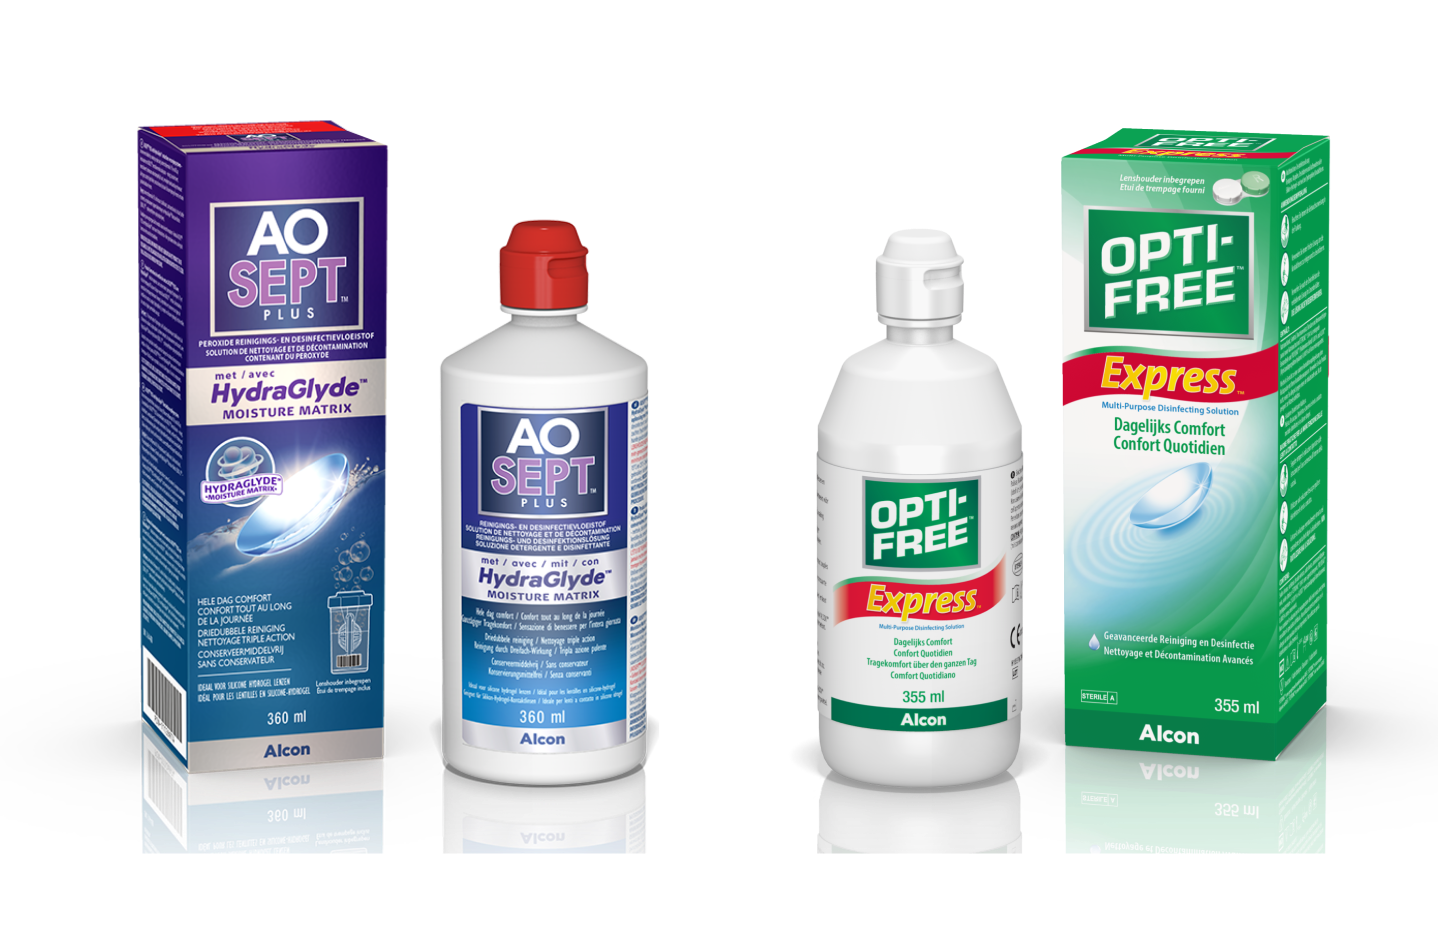 Produktová krabička a lahvička AO Sept a Opti-free Express - roztoky pro kontaktní čočky od Alconu